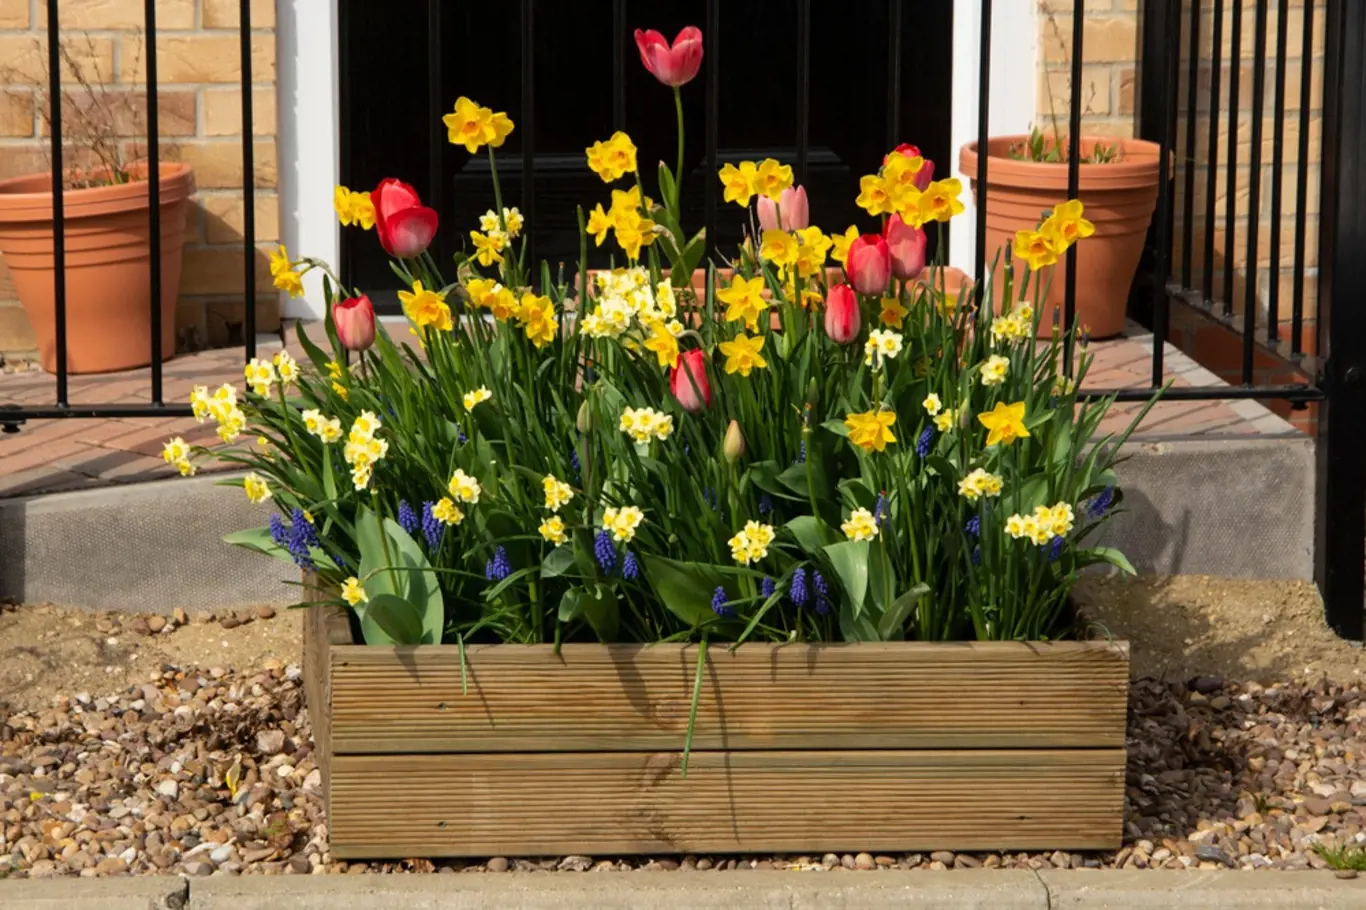 Dřevěný truhlík osázený tulipány, narcisy a modřenci.